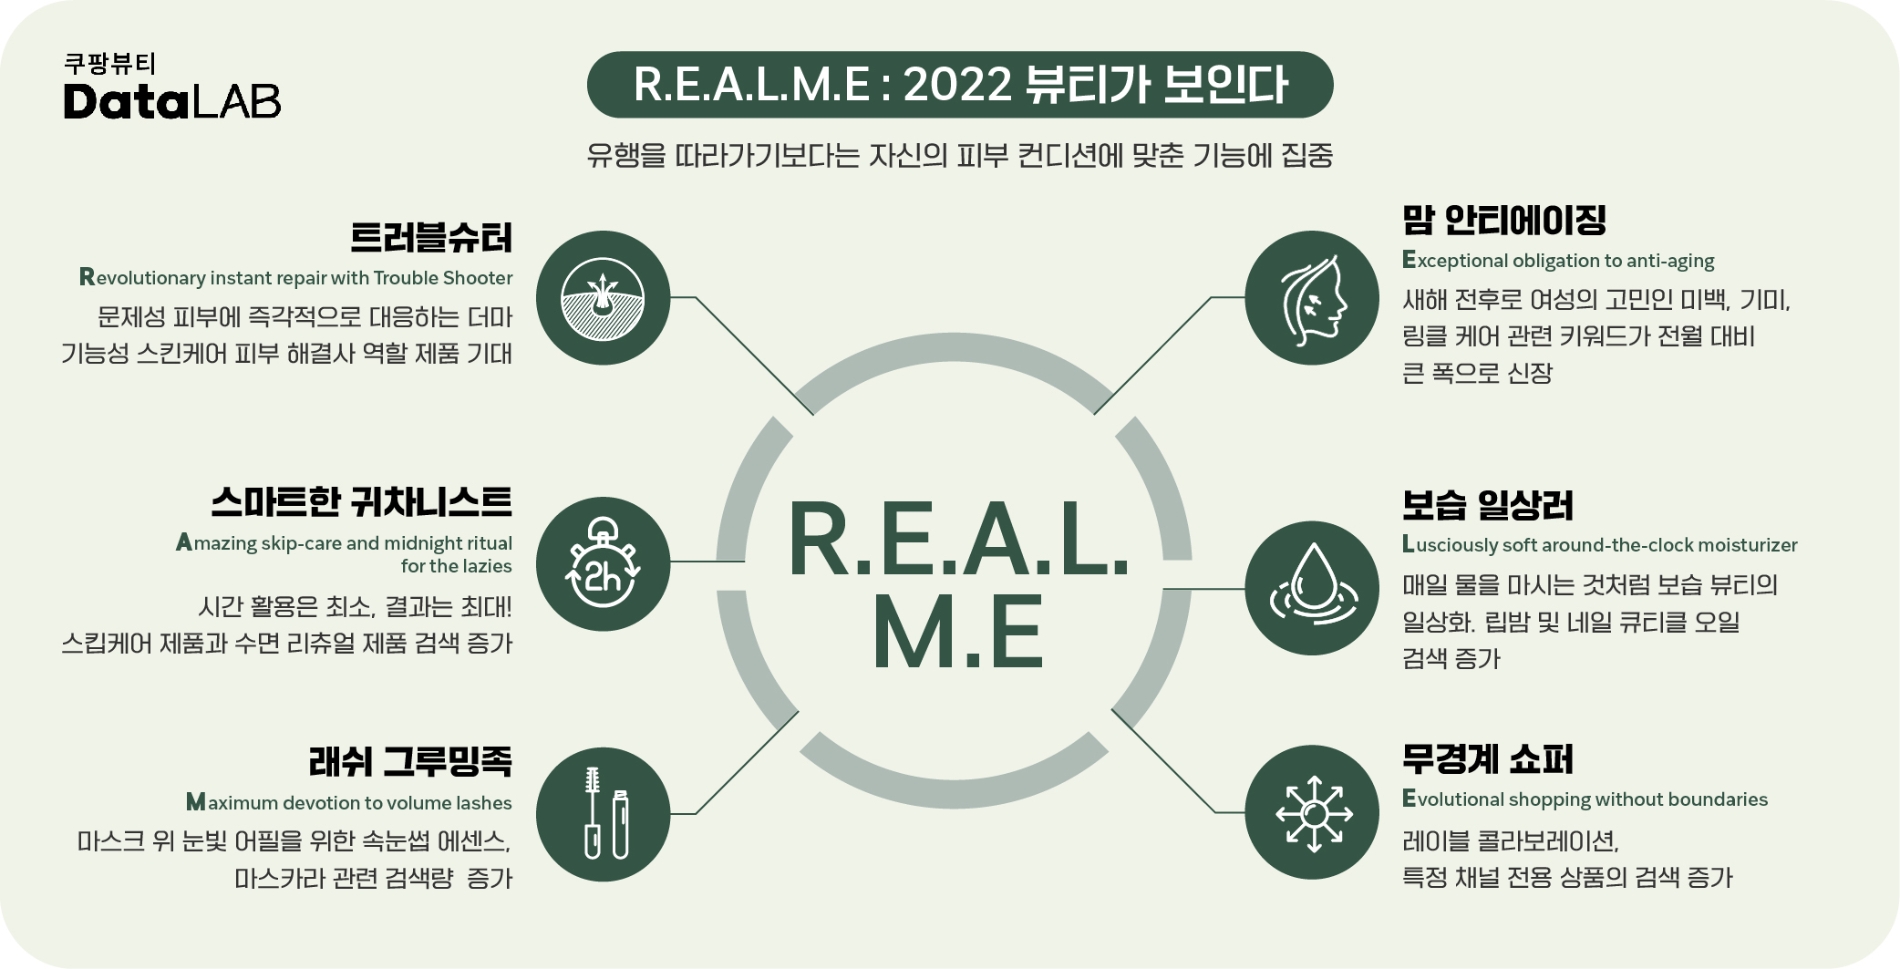 쿠팡, 빅데이터로 분석한 2022 뷰티 트렌드 ‘R.E.A.L.M.E’ 발표